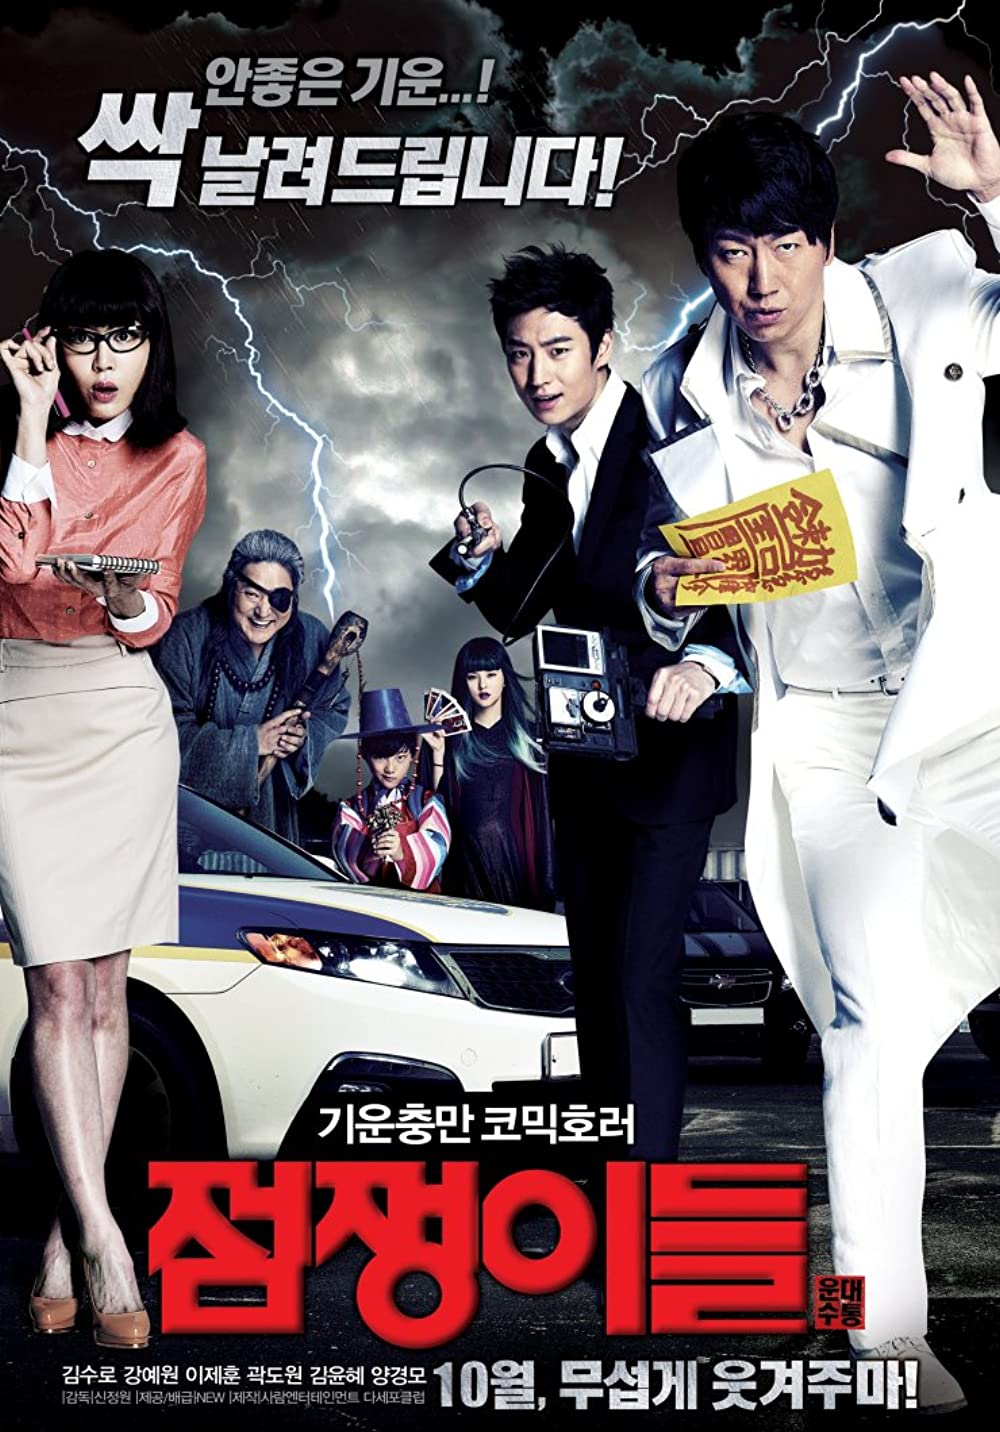 7 Film Korea horor komedi, penuh cerita menyeramkan dan adegan kocak